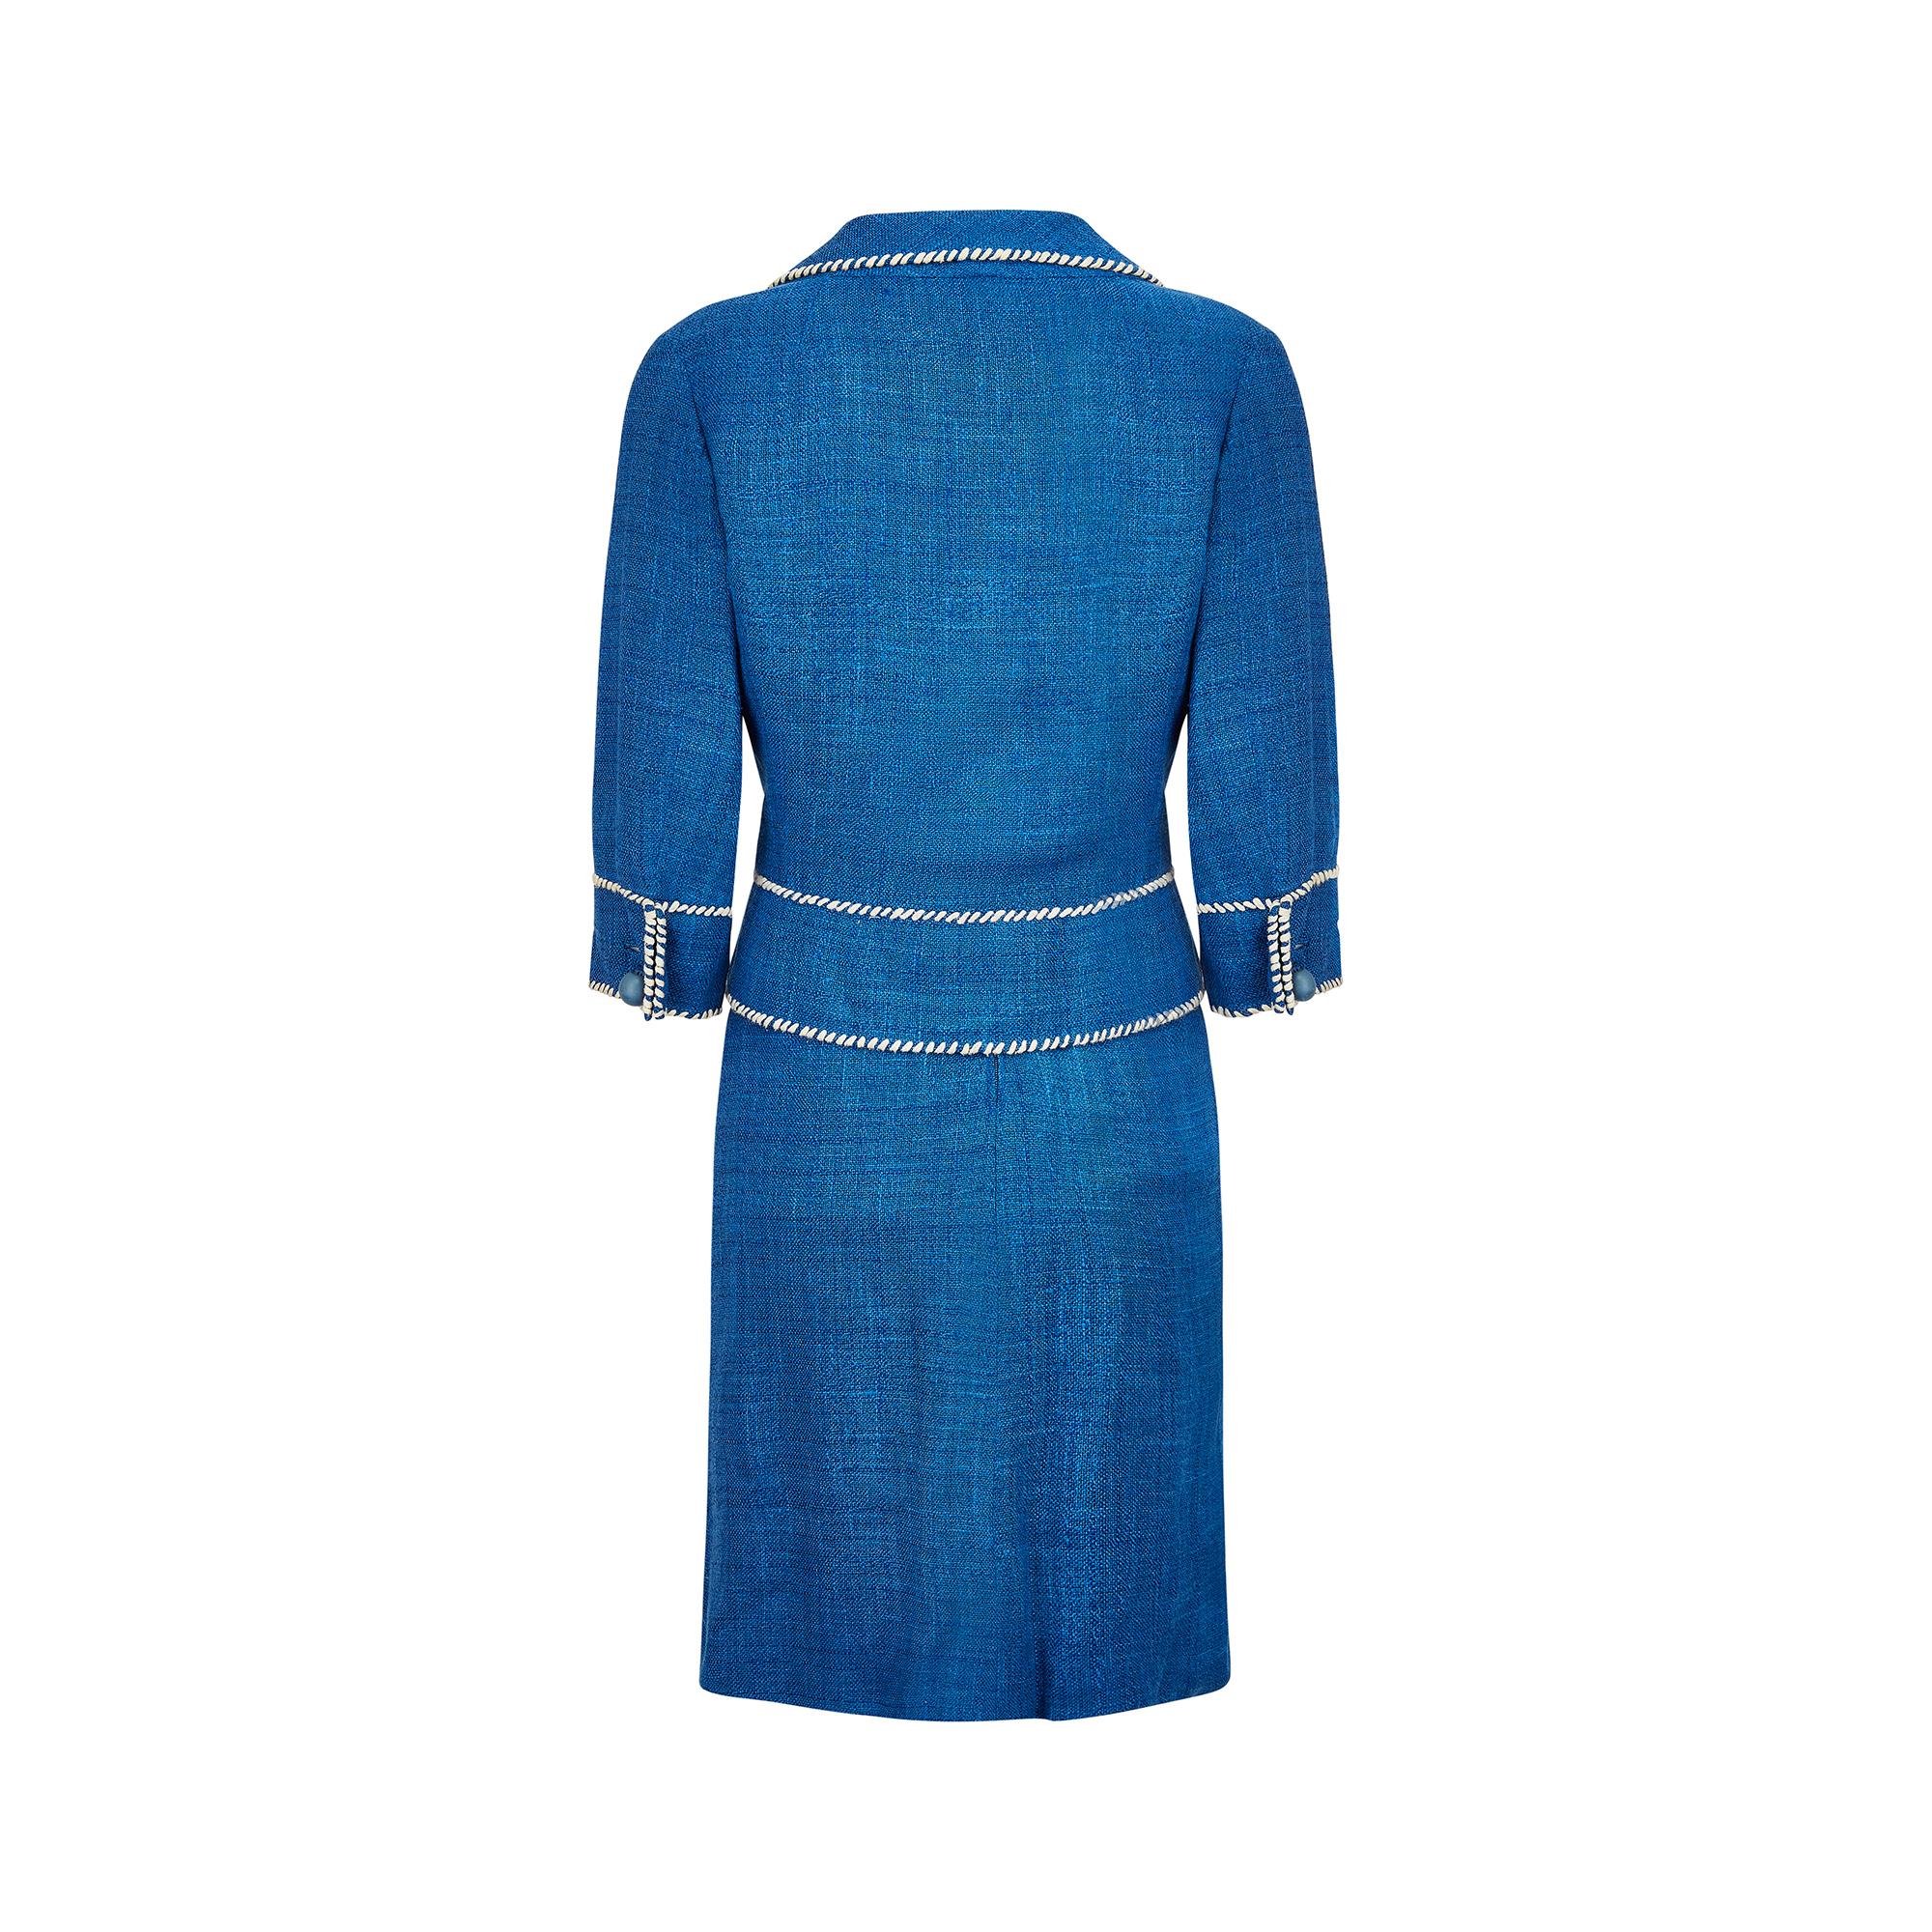 Women's 1950s Jacques Esterel Haute Couture Blue Linen Dress Suit For Sale